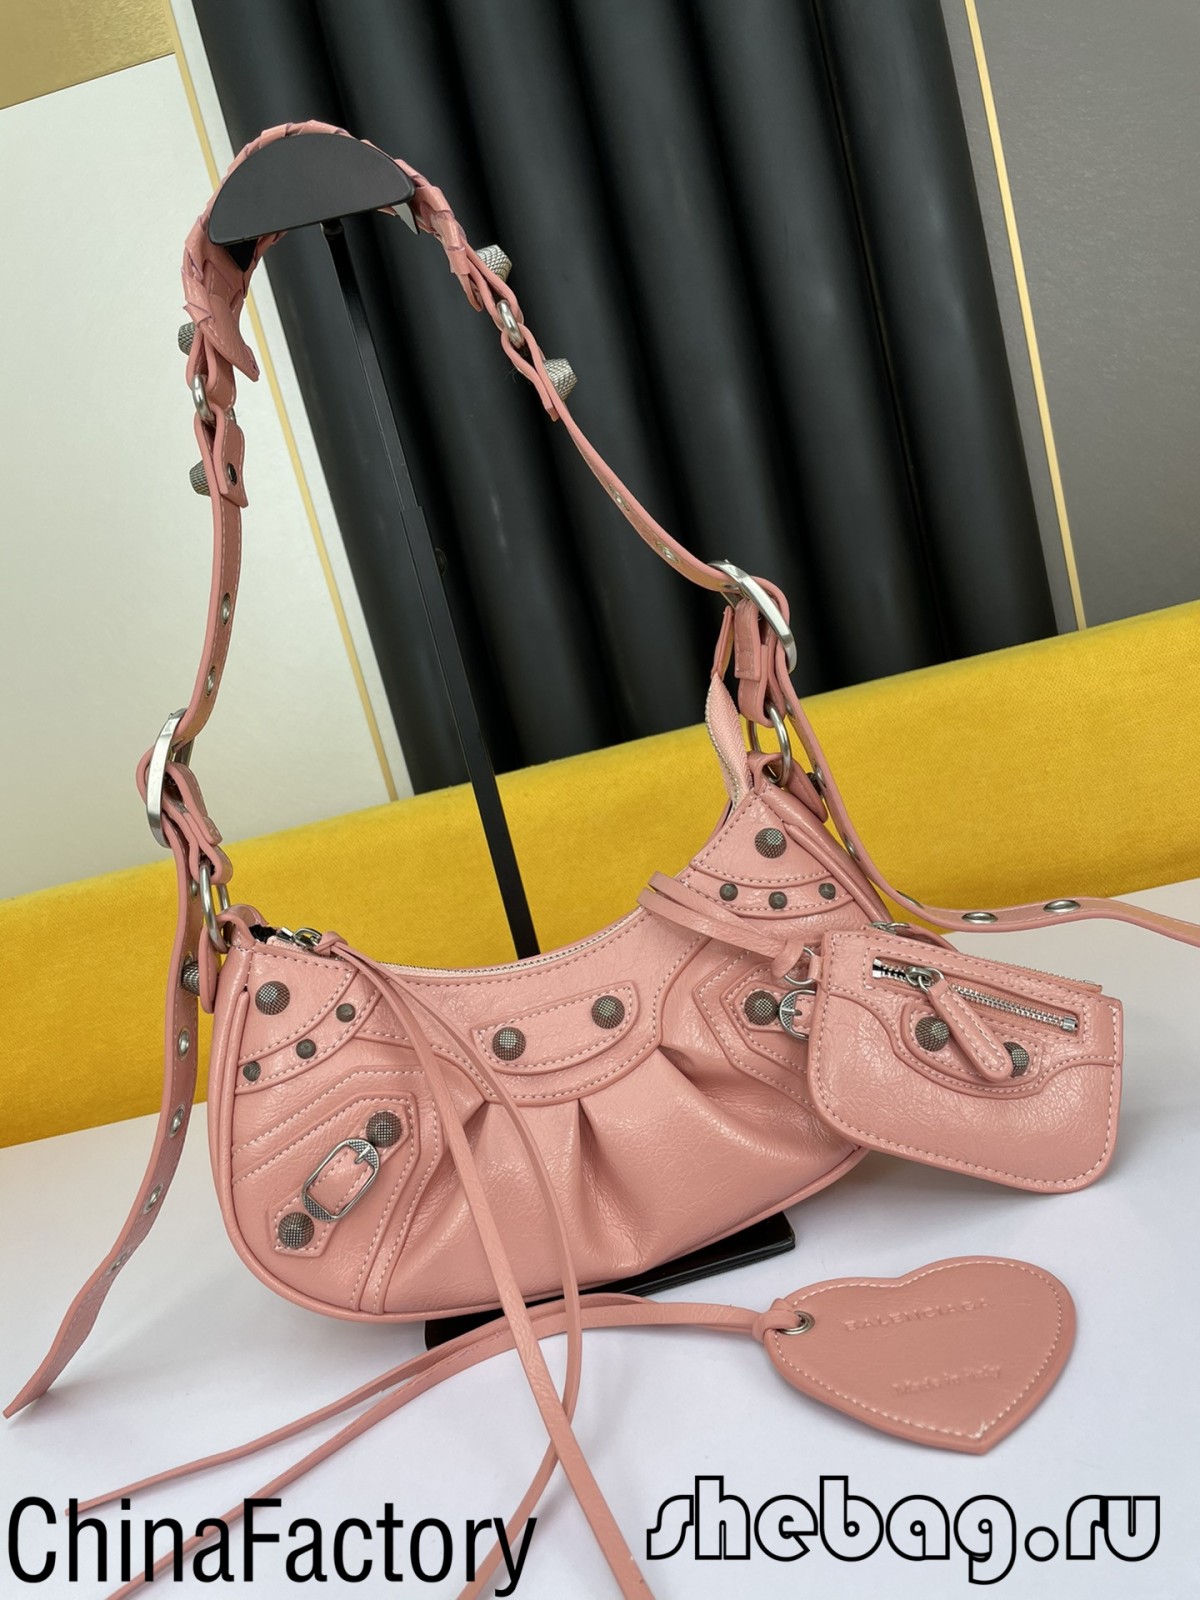 ಬಾಲೆನ್ಸಿಯಾಗ ಭುಜದ ಚೀಲ ಪ್ರತಿಕೃತಿ: ಲೆ ಕಾಗೋಲ್ (ನವೆಂಬರ್ 2021)-Best Quality Fake Louis Vuitton Bag Online Store, Replica designer bag ru